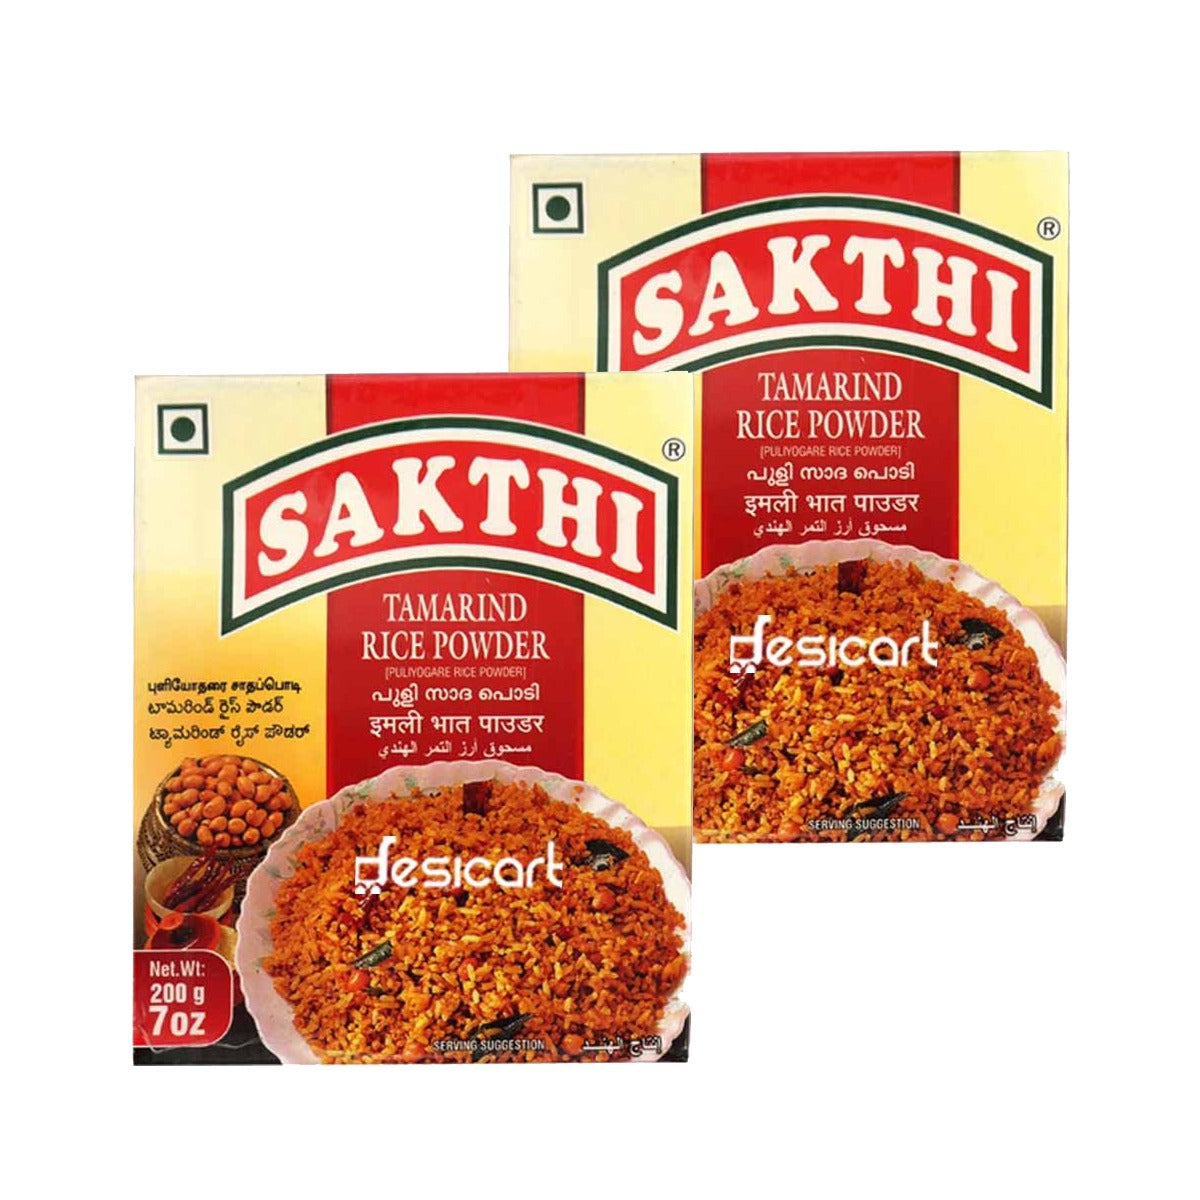 Sakthi Tamarind Rice Powder 200g Pack of 2 